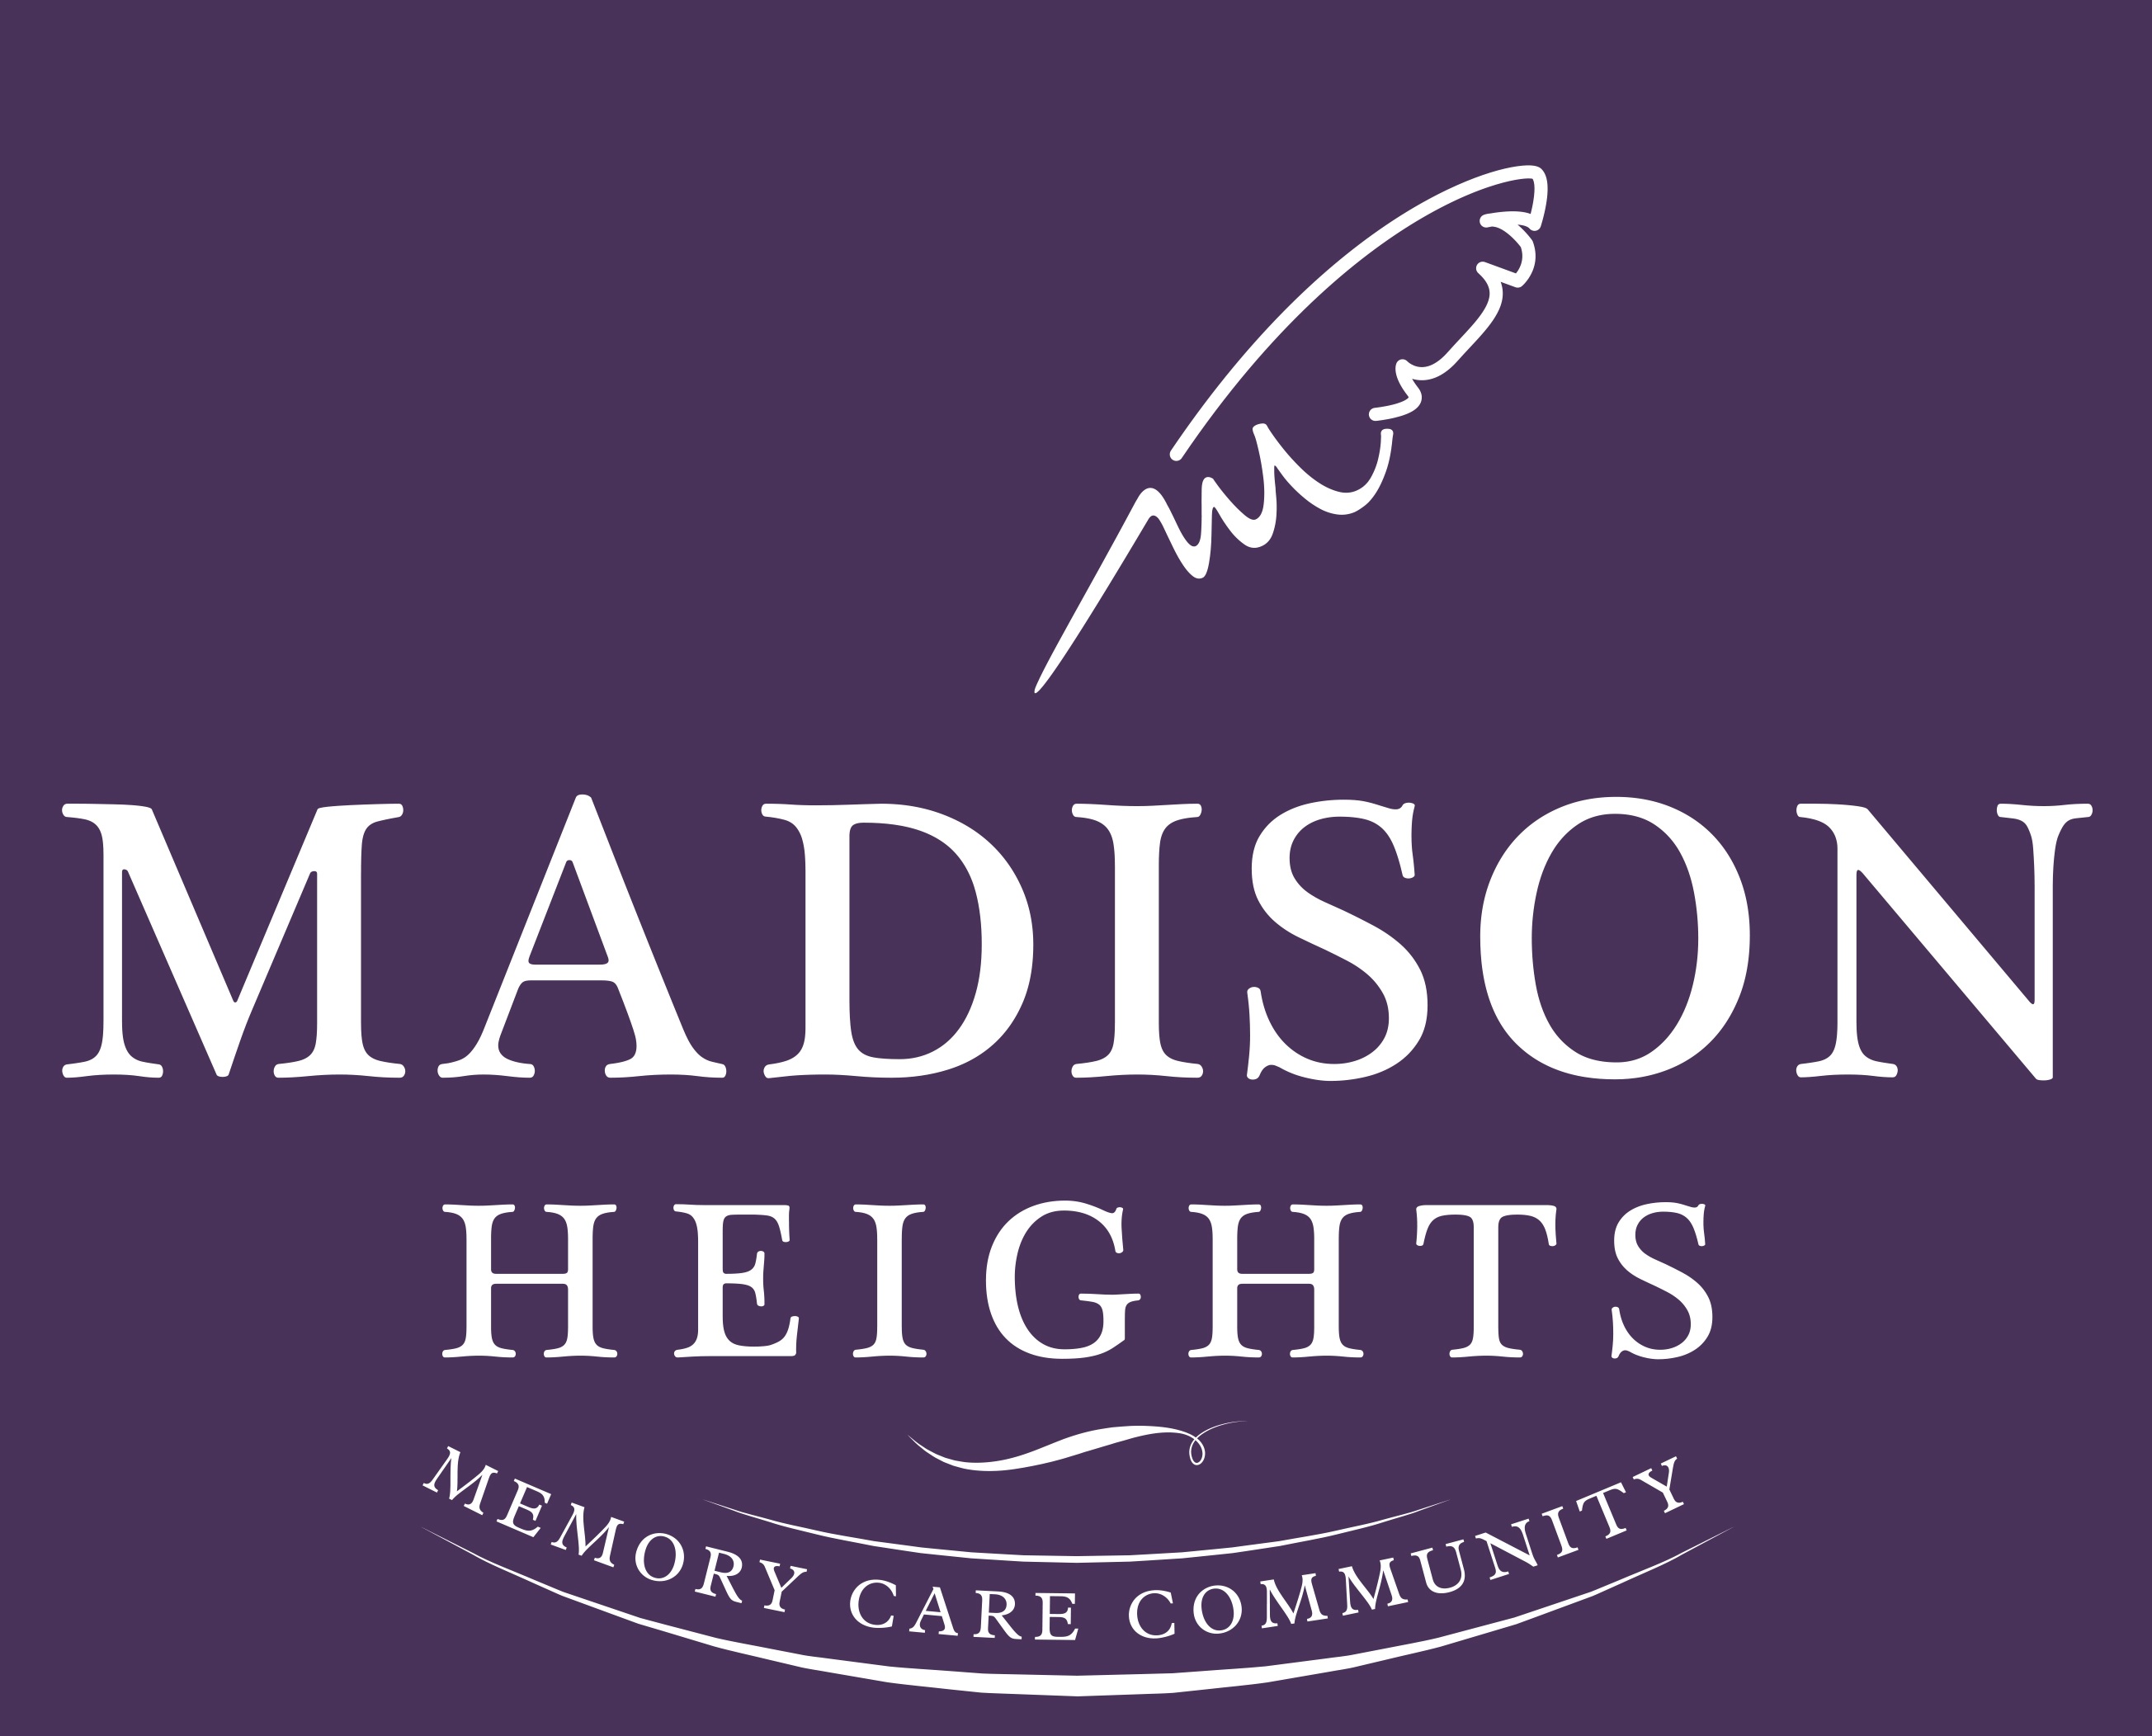 3.  Madison Heights (Purple)